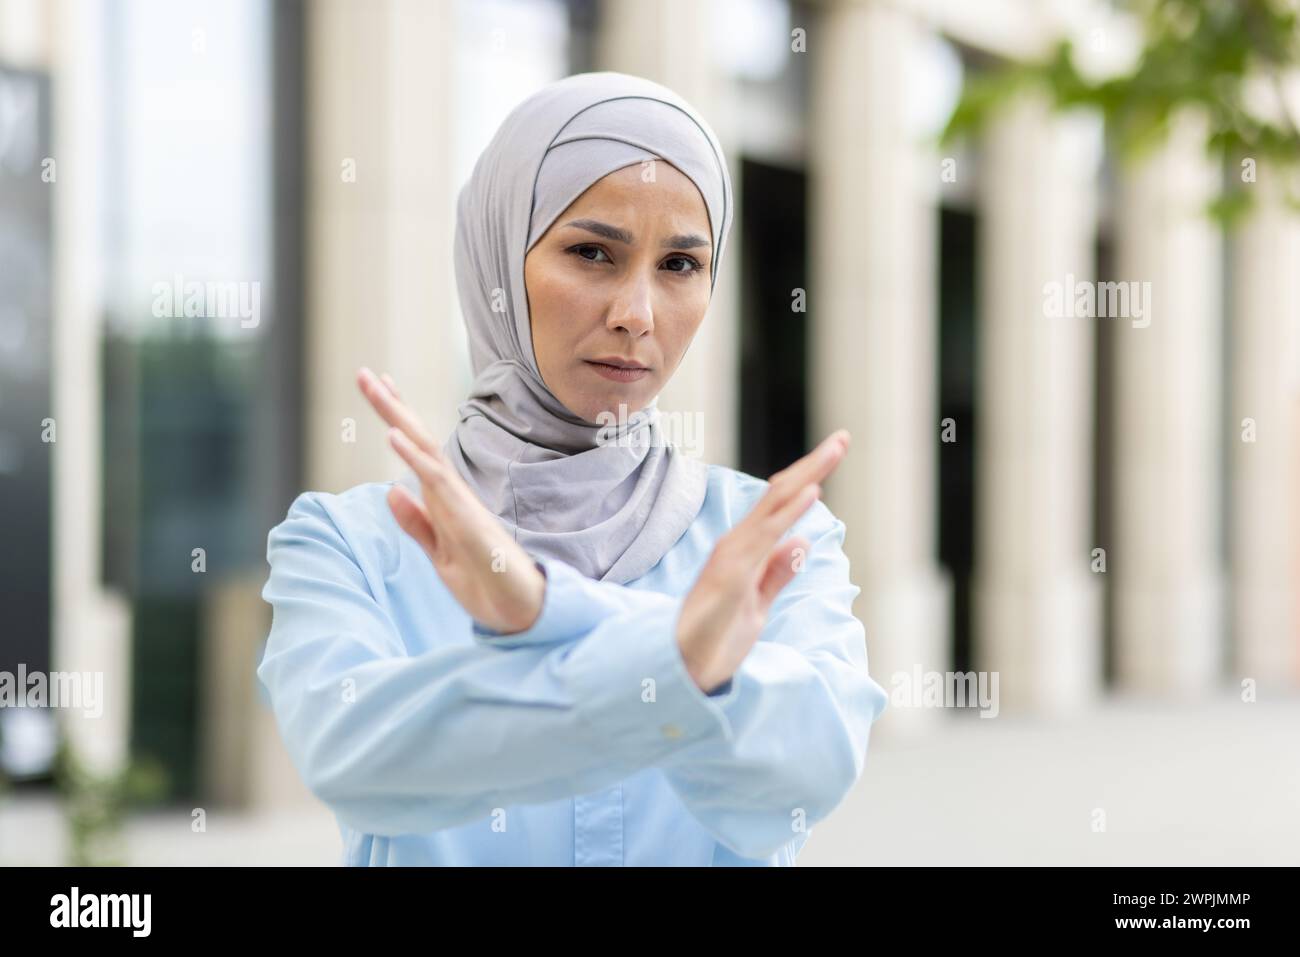 Une femme musulmane adulte habilitée portant un hijab croise les bras dans un geste en « X », signalant l'arrêt ou le déni à l'extérieur. Banque D'Images